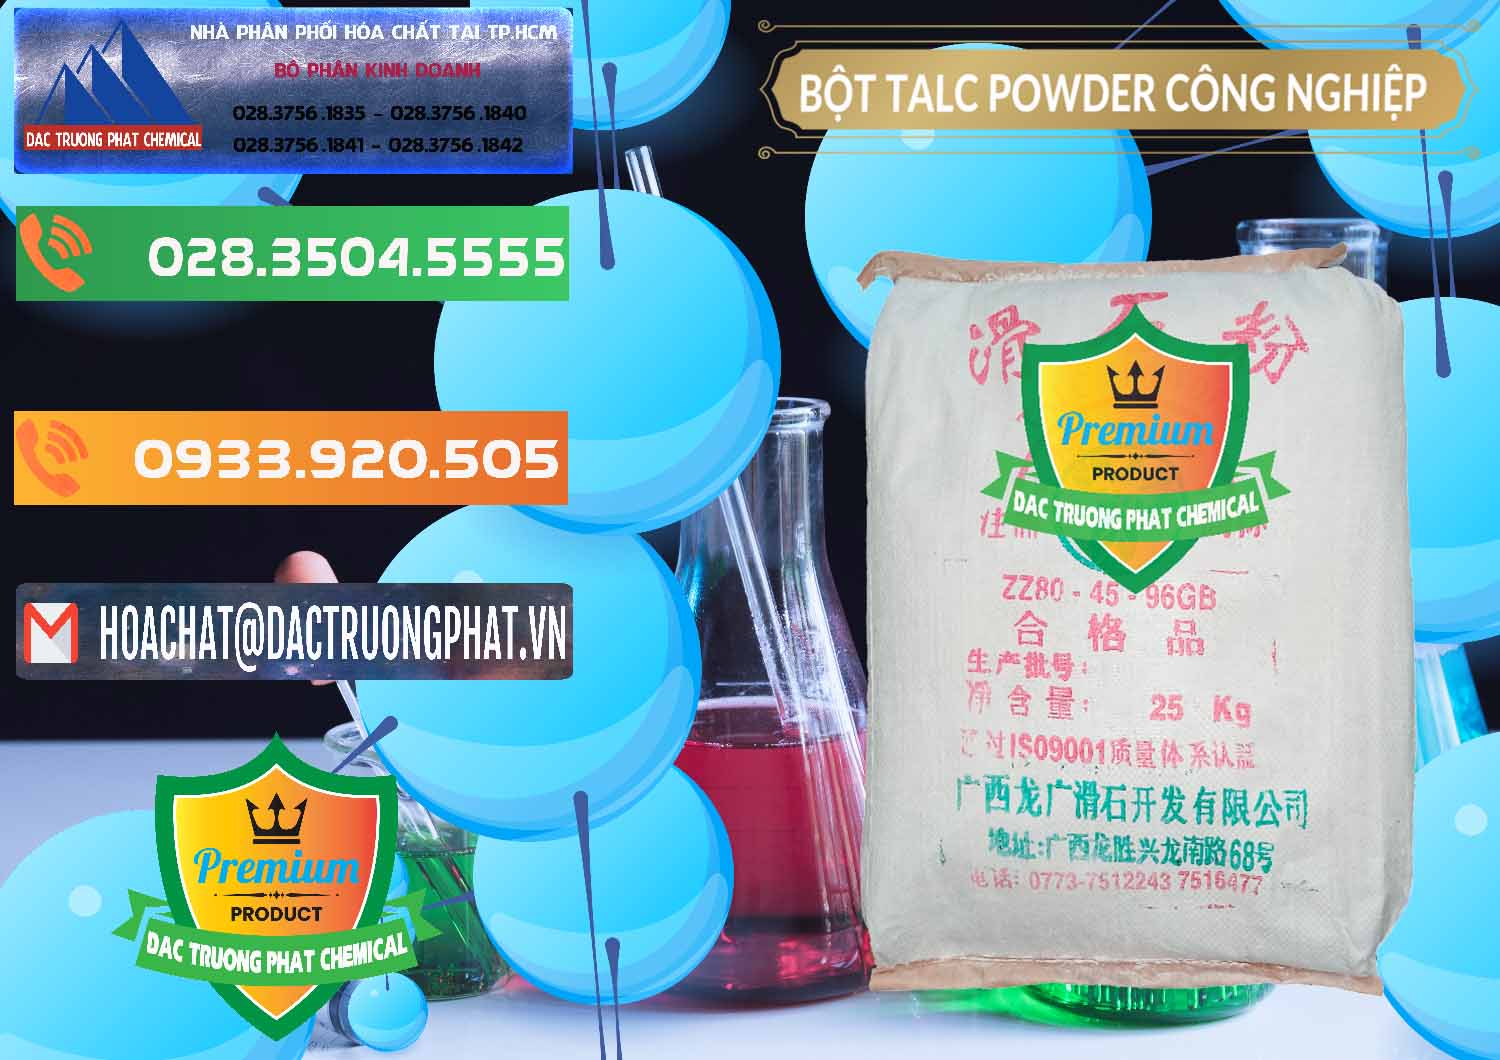 Cty cung ứng - bán Bột Talc Powder Công Nghiệp Trung Quốc China - 0037 - Nhà phân phối & cung ứng hóa chất tại TP.HCM - hoachatxulynuoc.com.vn